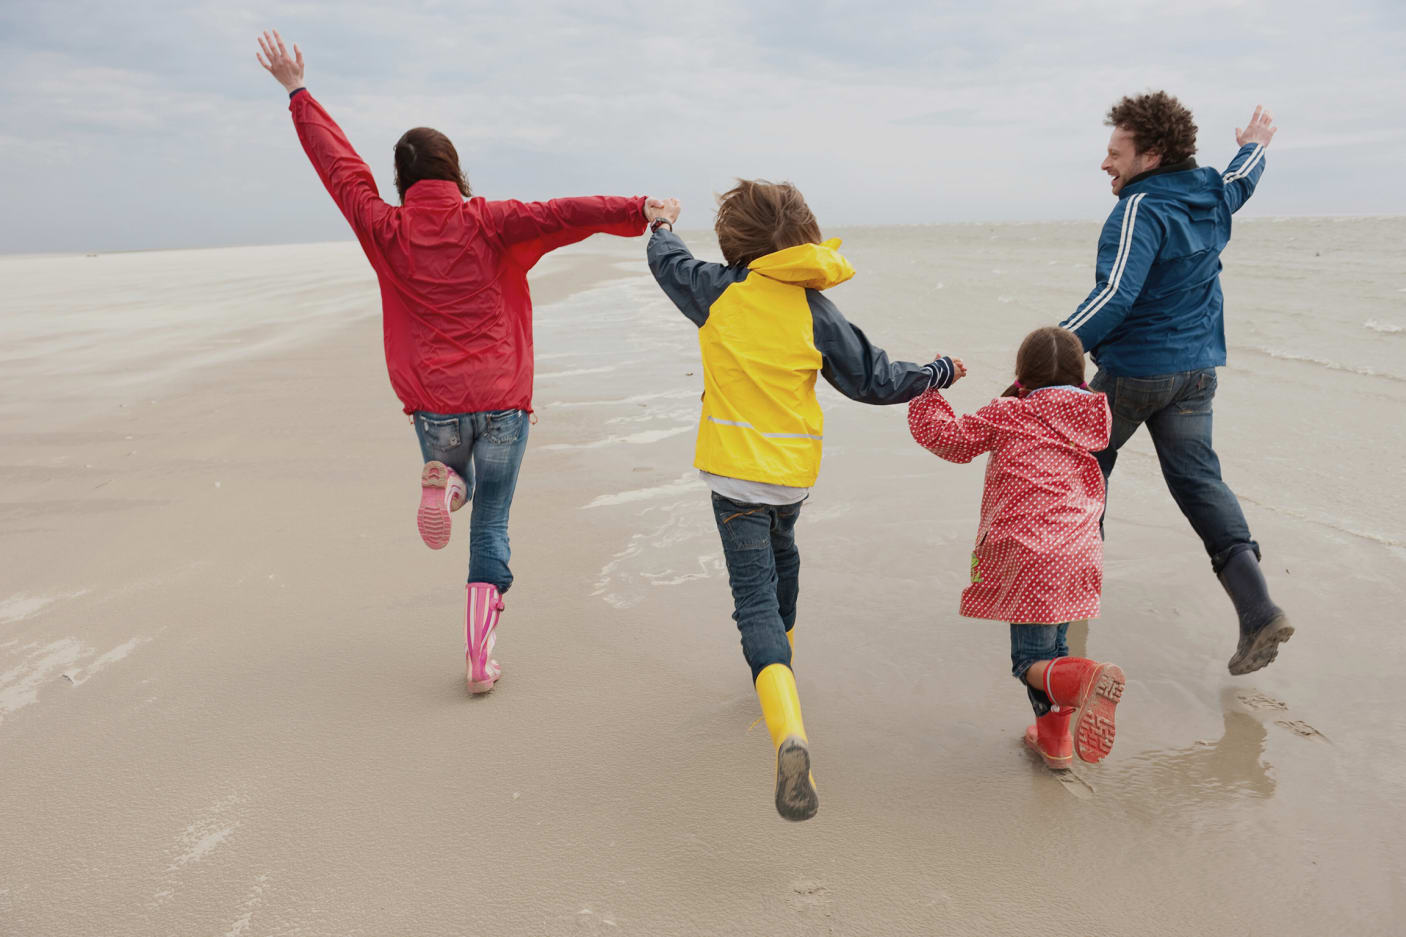 Mutter, Vater und zwei Kinder von hinten, fröhlich springend, an der Nordsee.